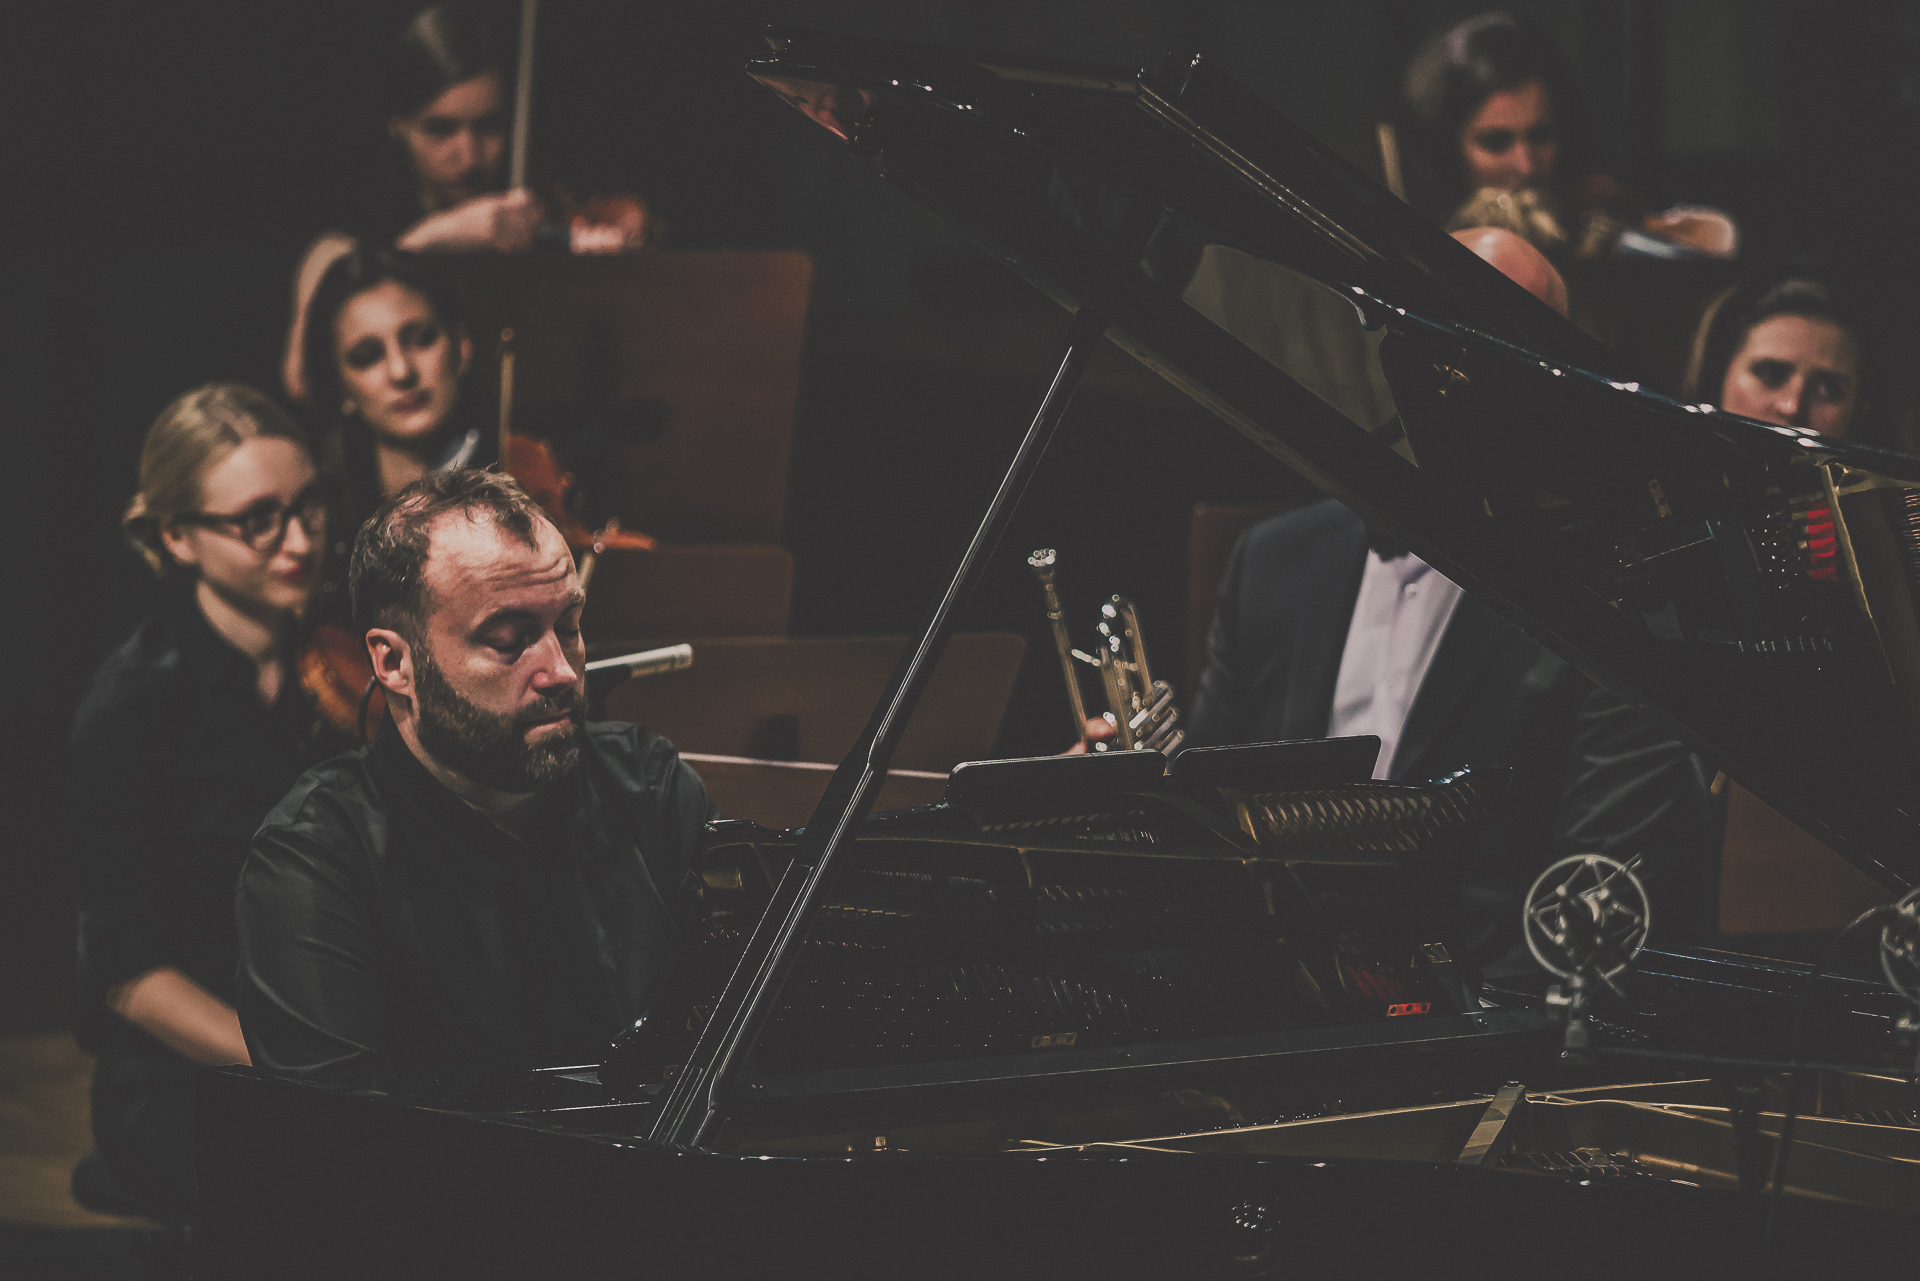 zdjecie solisty Piotra Salajczyka przy fortepianie podczas koncertu 5 wrzesnia 2020